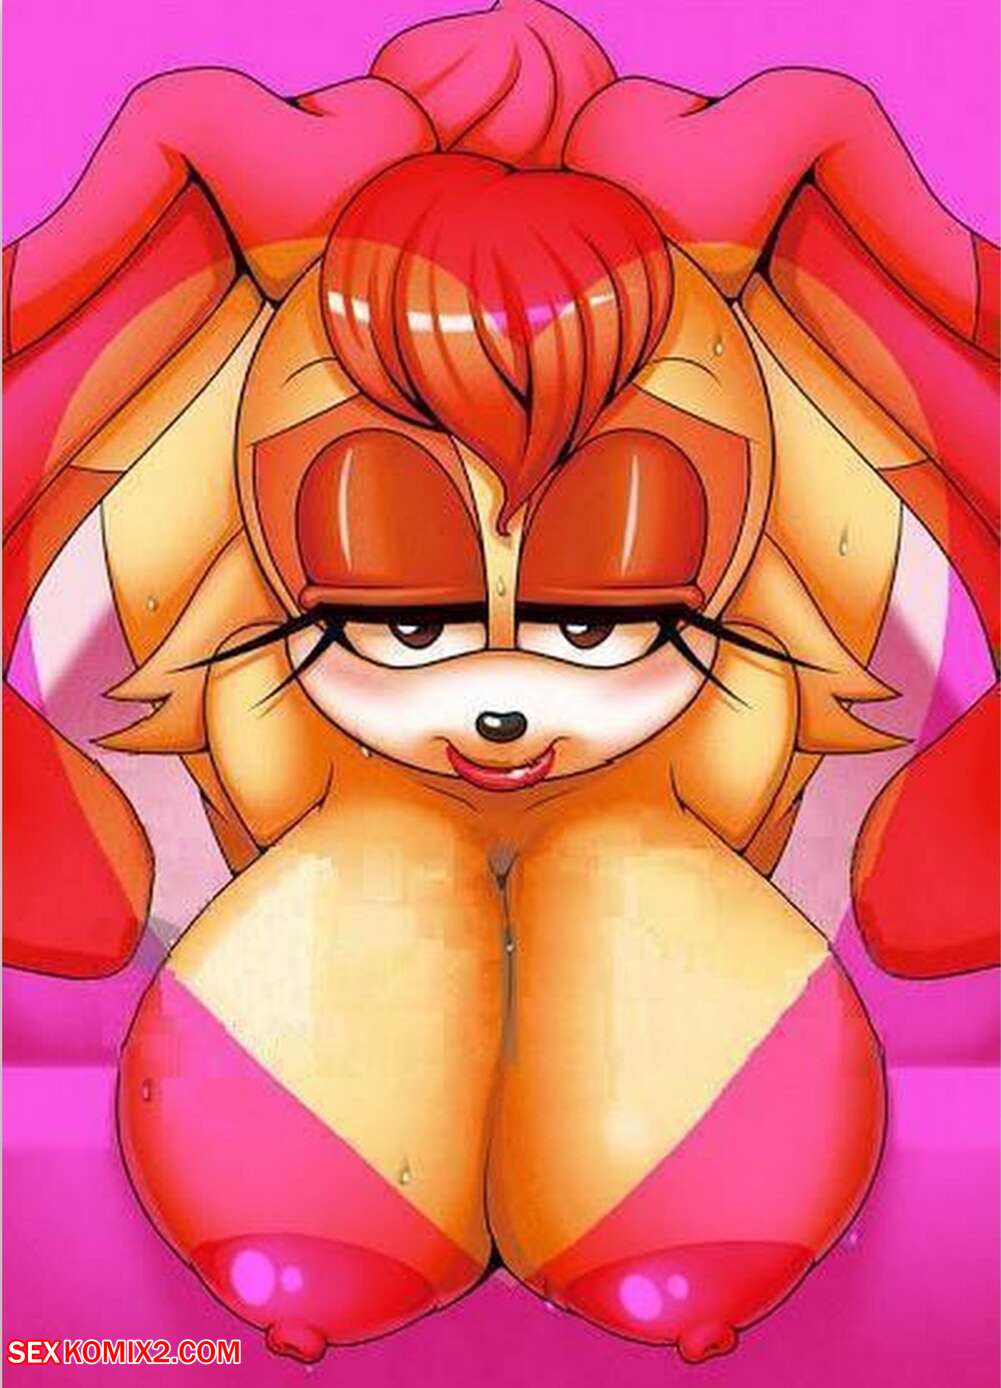 Sonic Furry Anime Porn - âœ…ï¸ Porn comic Sonic the Hedgehog. Canned furry. Arts Sex comic selection of  arts | Porn comics in English for adults only | sexkomix2.com